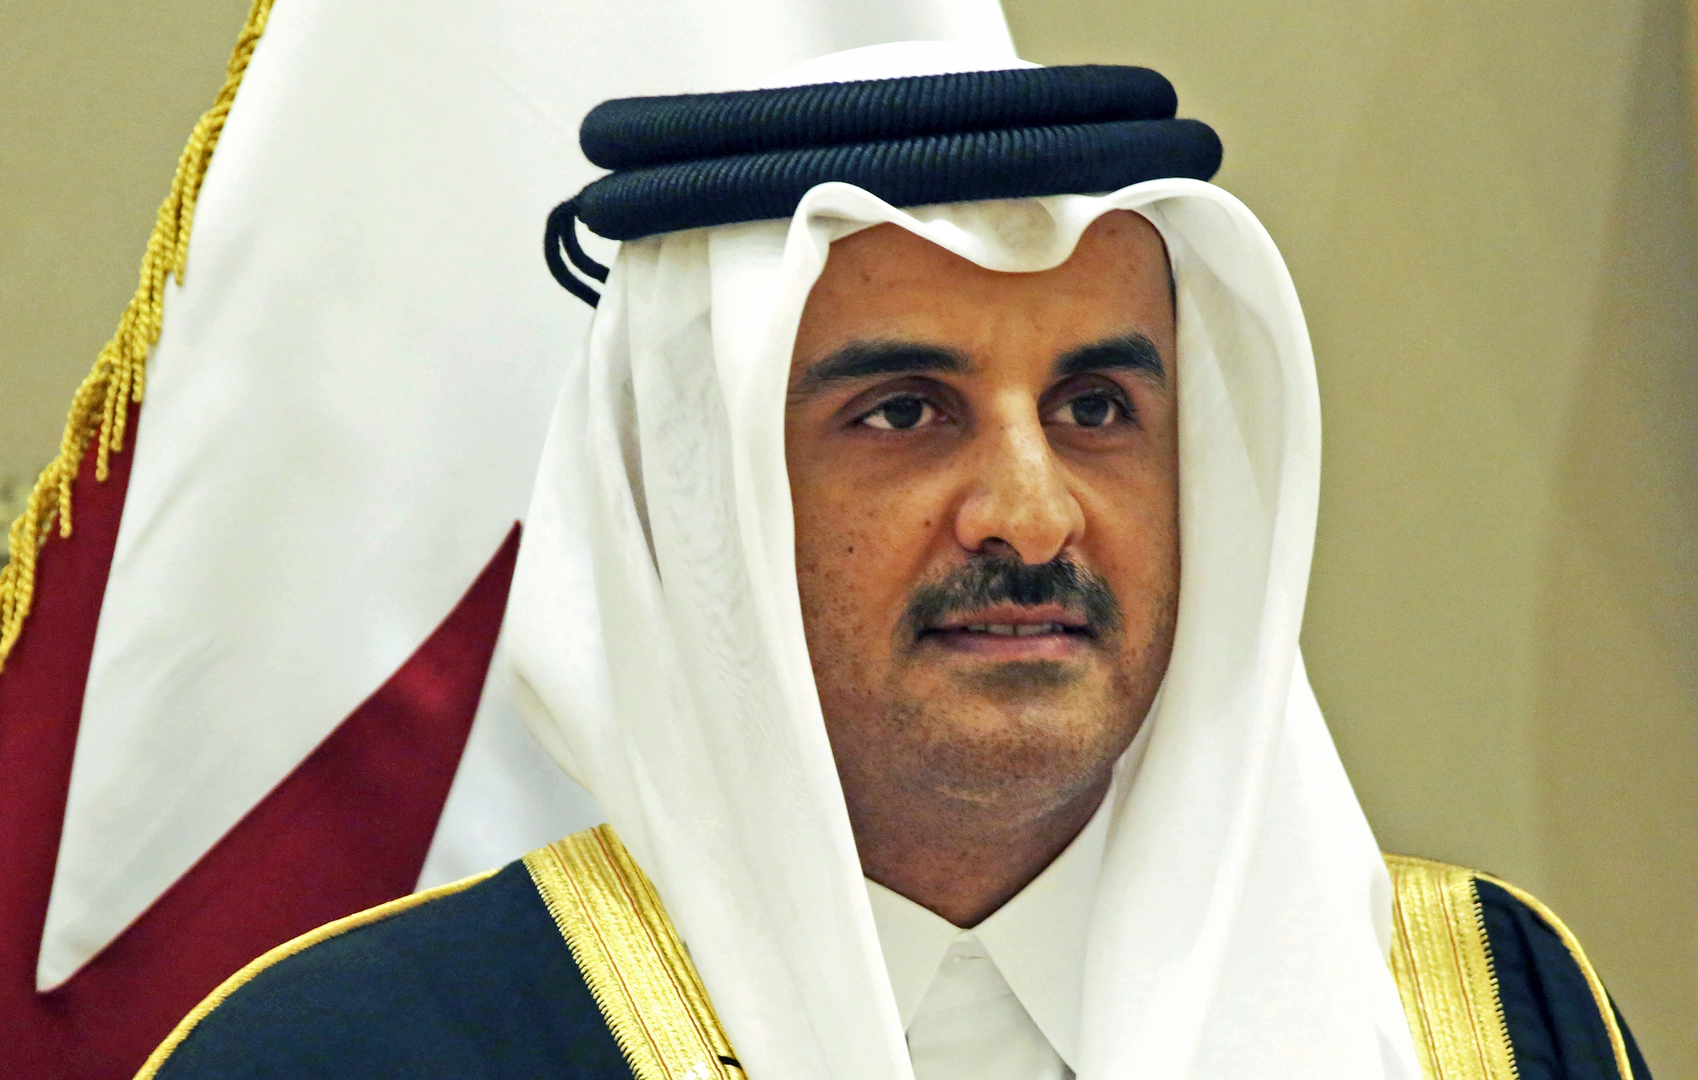 أمير قطر مفتتحا منتدى الدوحة: العداء للسامية يستخدم على نحو خاطئ ضد كل من ينتقد سياسات إسرائيل